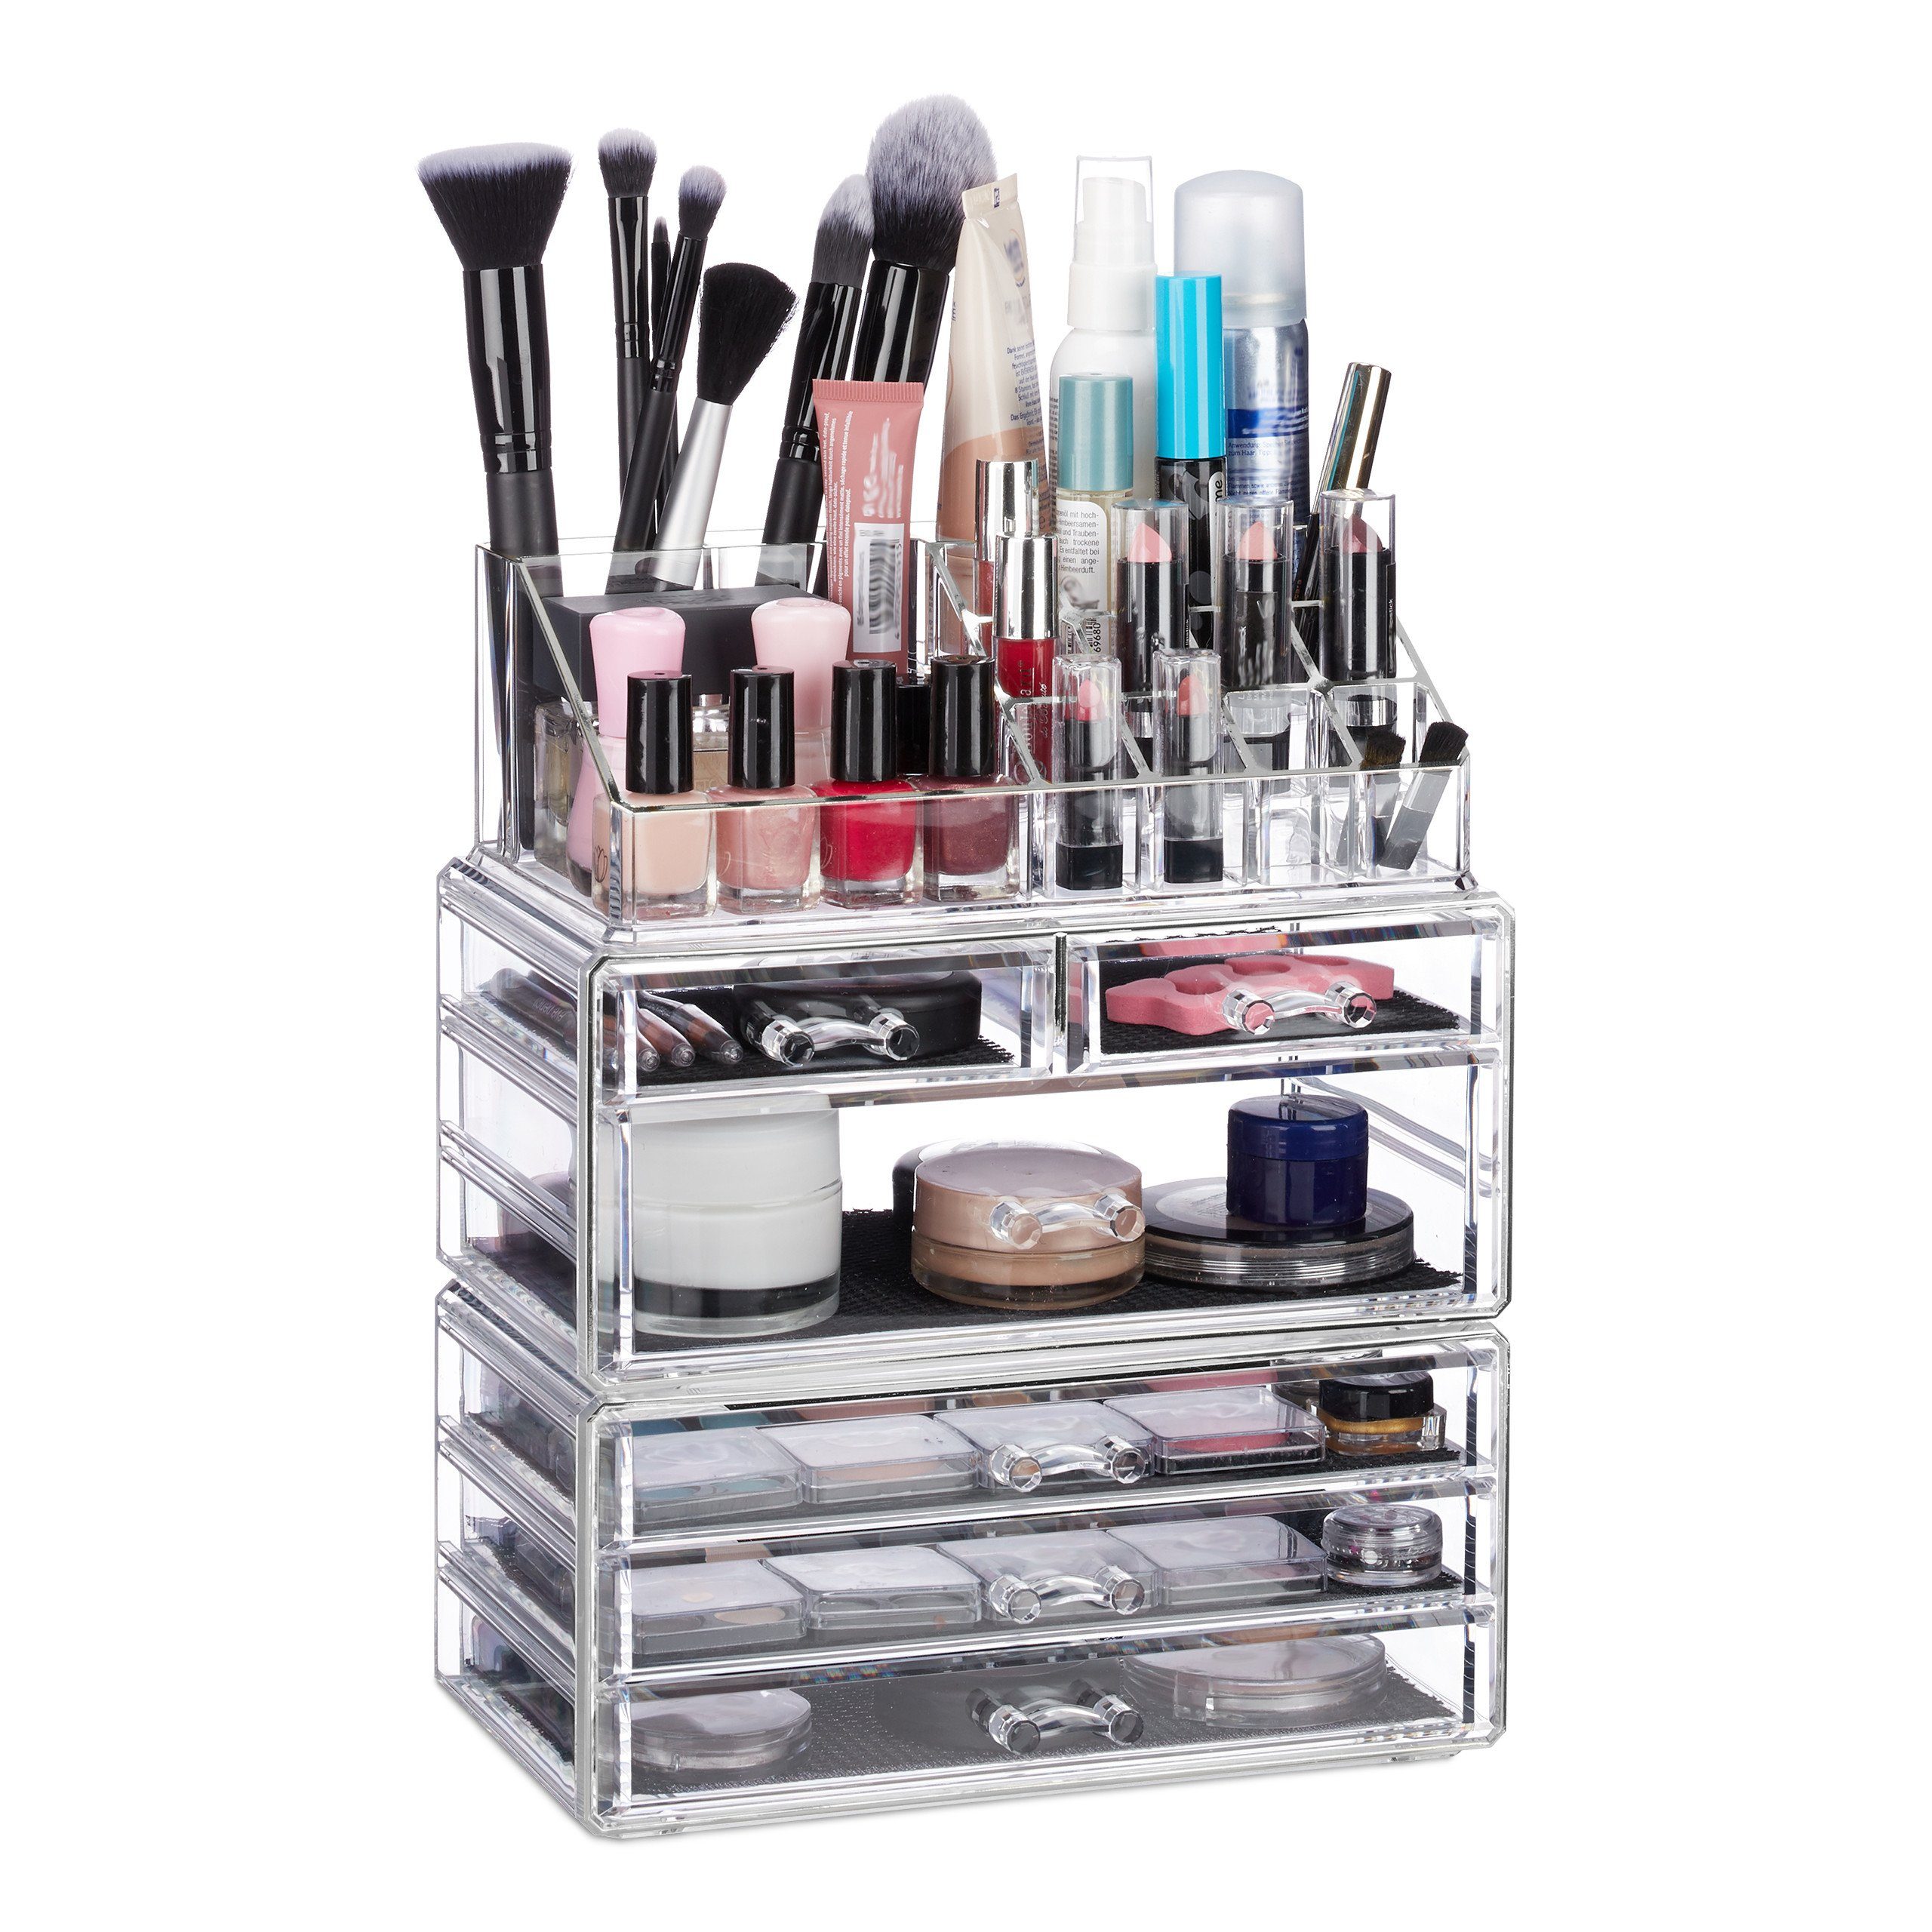 relaxdays Make-Up Organizer Kosmetikorganizer mit 6 Schubladen, Transparent